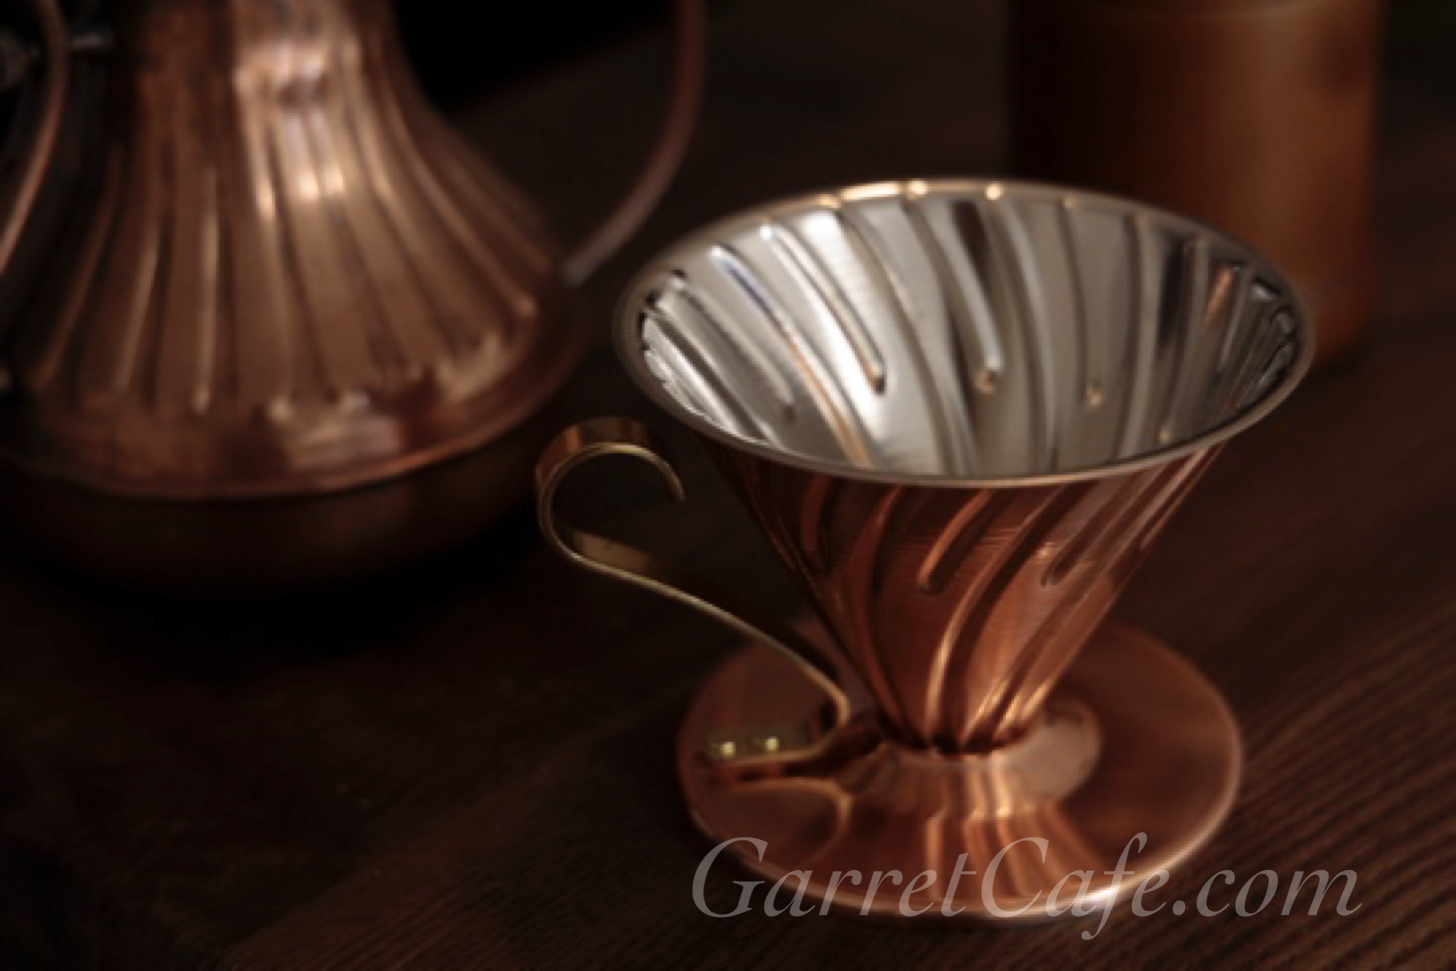 自宅で珈琲を淹れるには、雰囲気が出る銅製のドリッパーがオススメ | GarretCafe